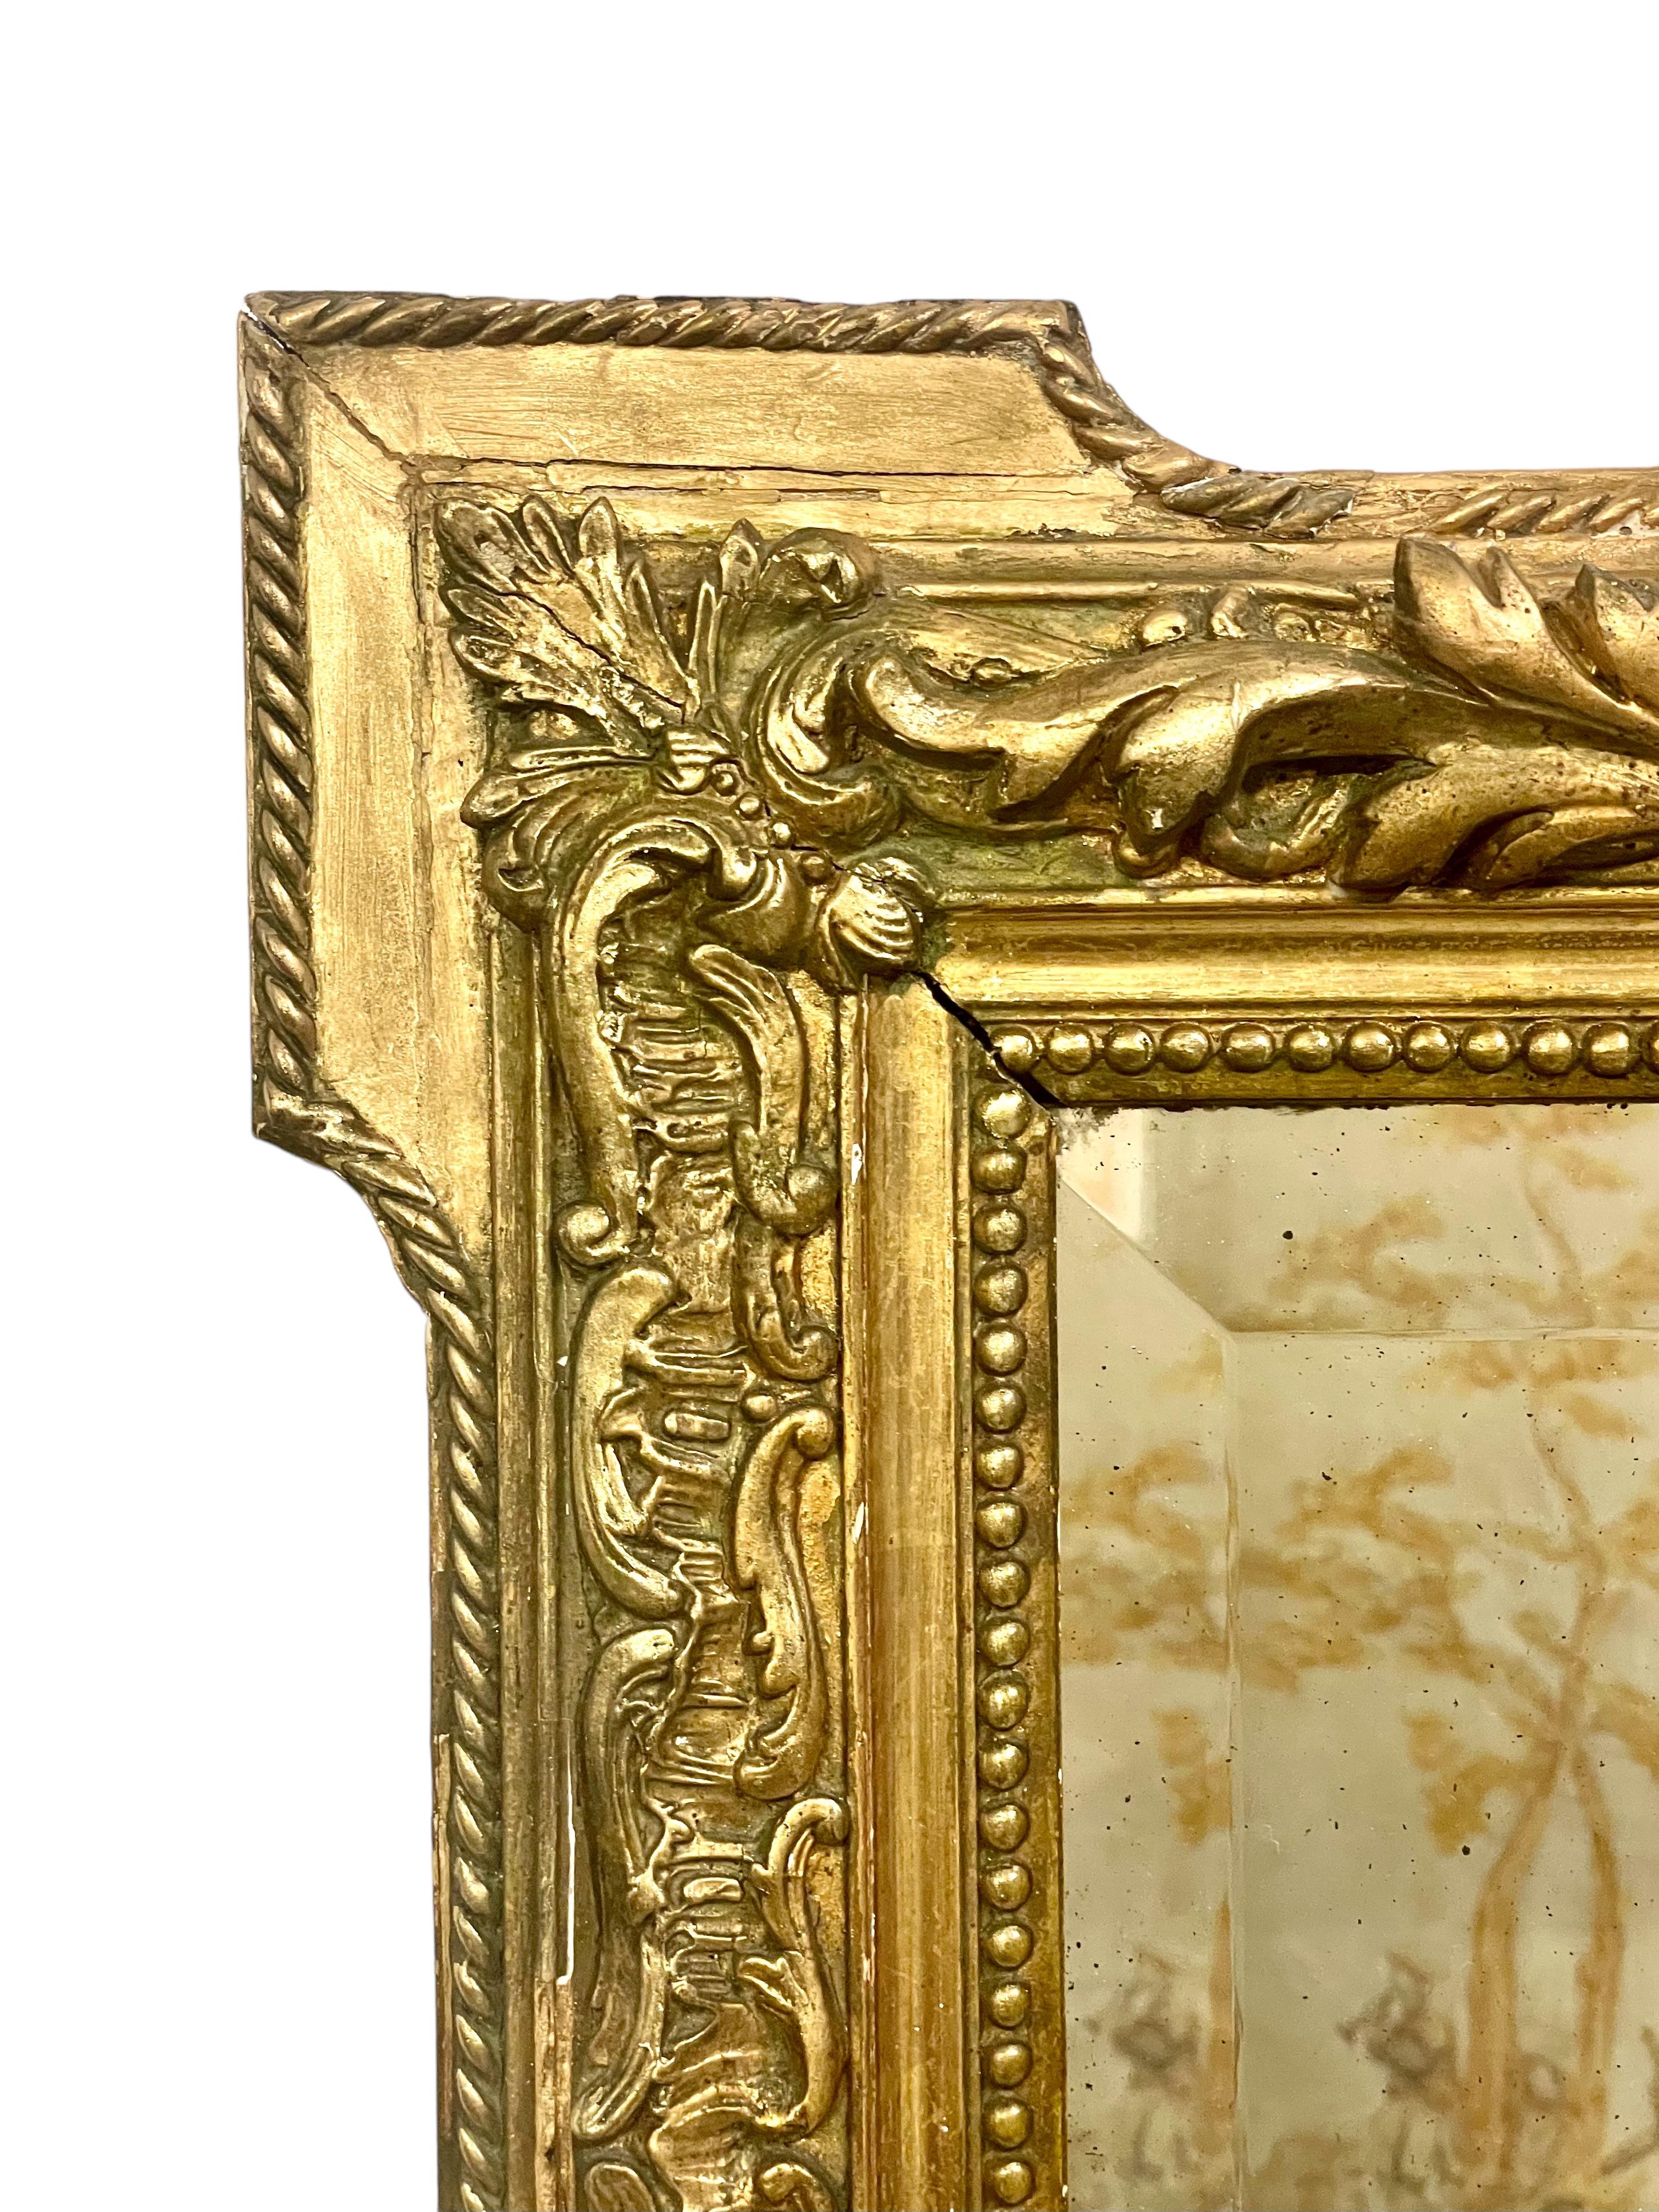 Un grand et impressionnant miroir de cheminée rectangulaire Napoléon III du XIXe siècle dans un cadre en bois et stuc doré, surmonté d'un imposant fronton de chérubins et de dauphins flanquant un médaillon ovale. Le cadre, avec ses moulures florales